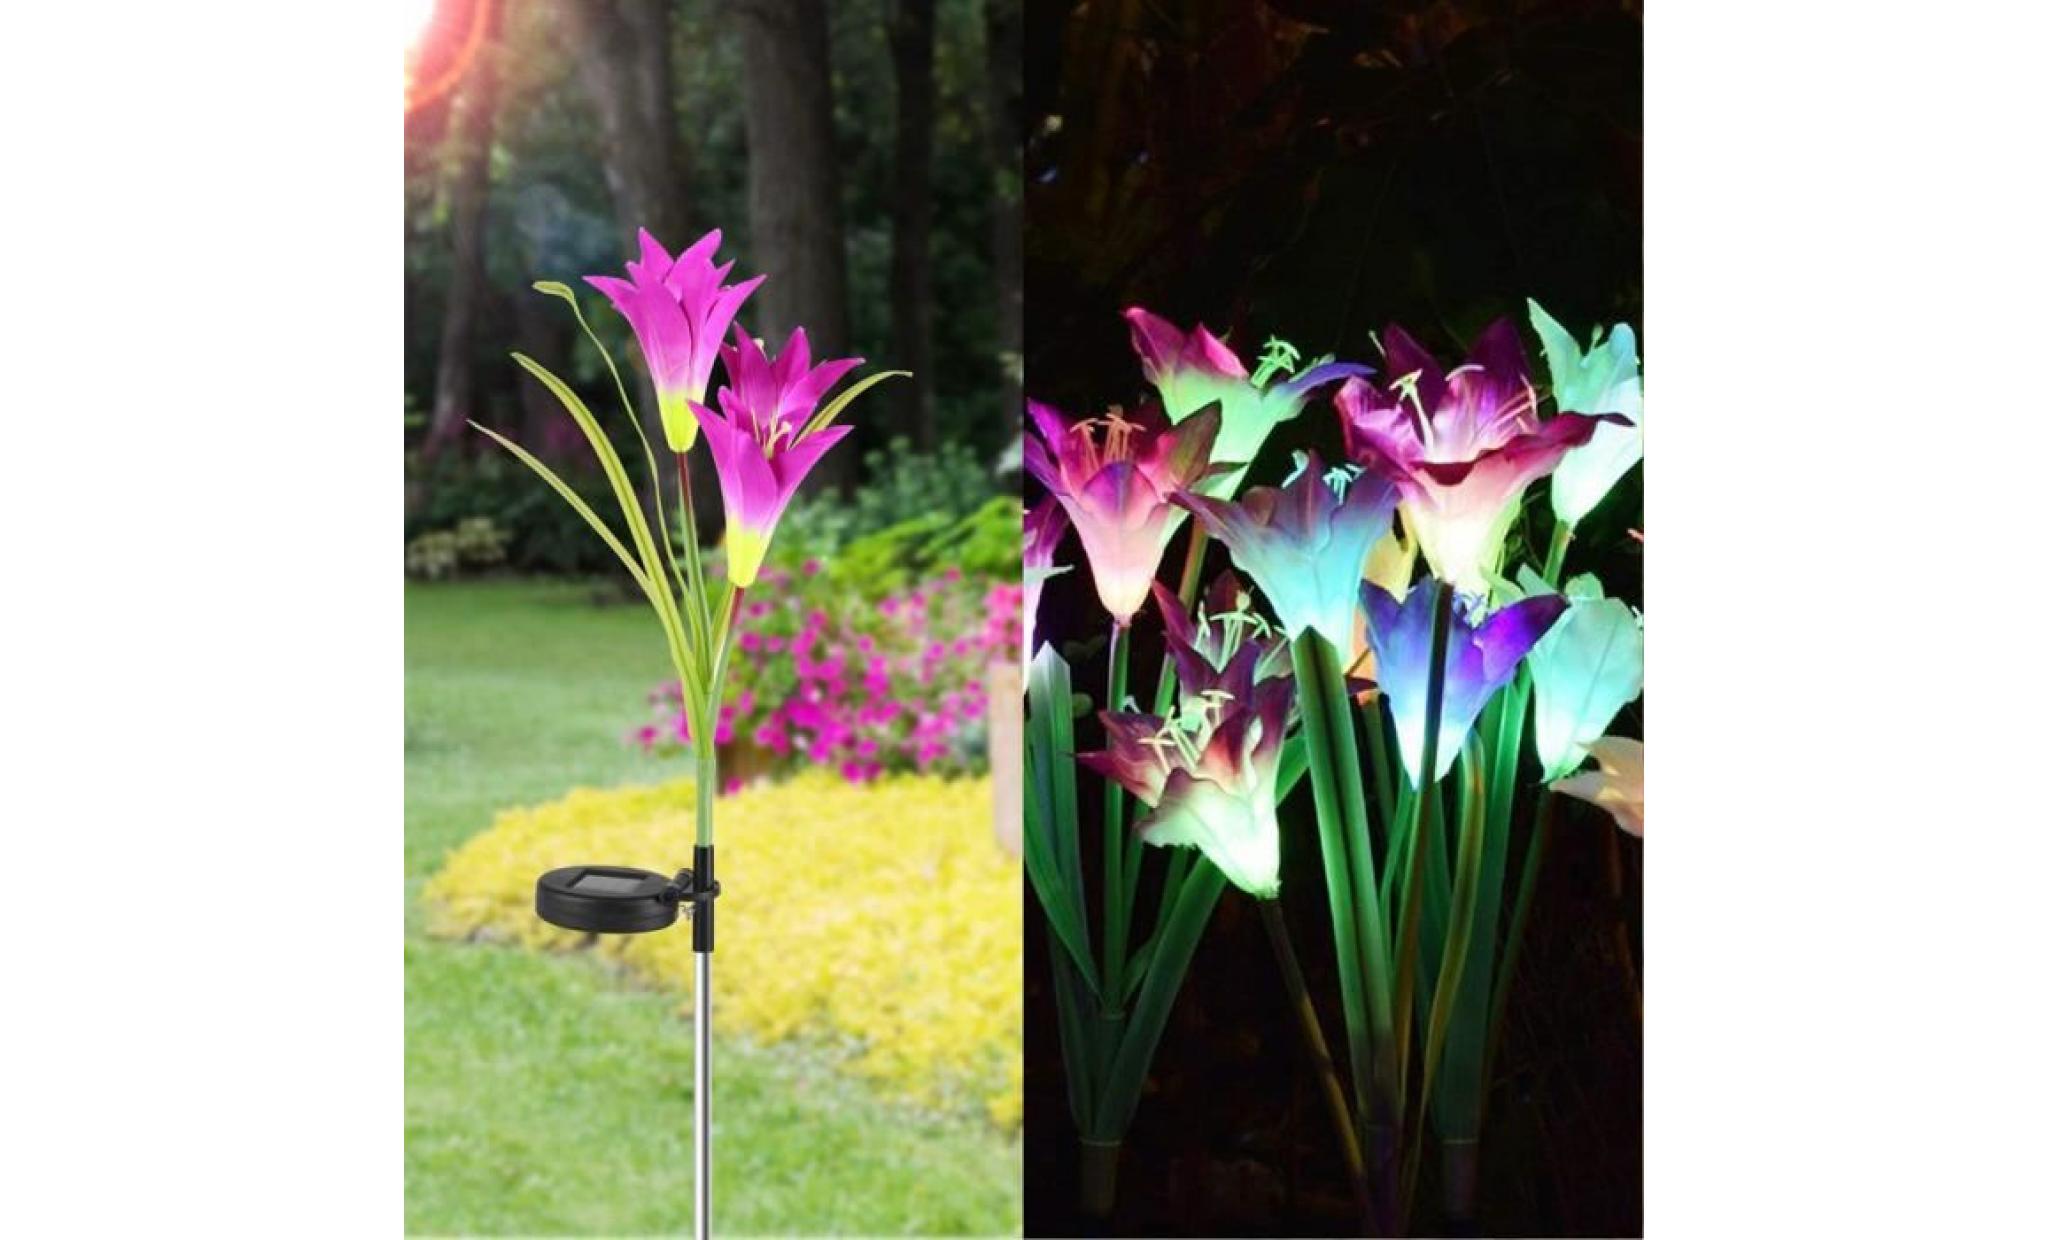 borne solaire 2 pcs fleur de lys jardin solaire actionné pieu lumières lumières fleurs artificielles led lumière #pa 131